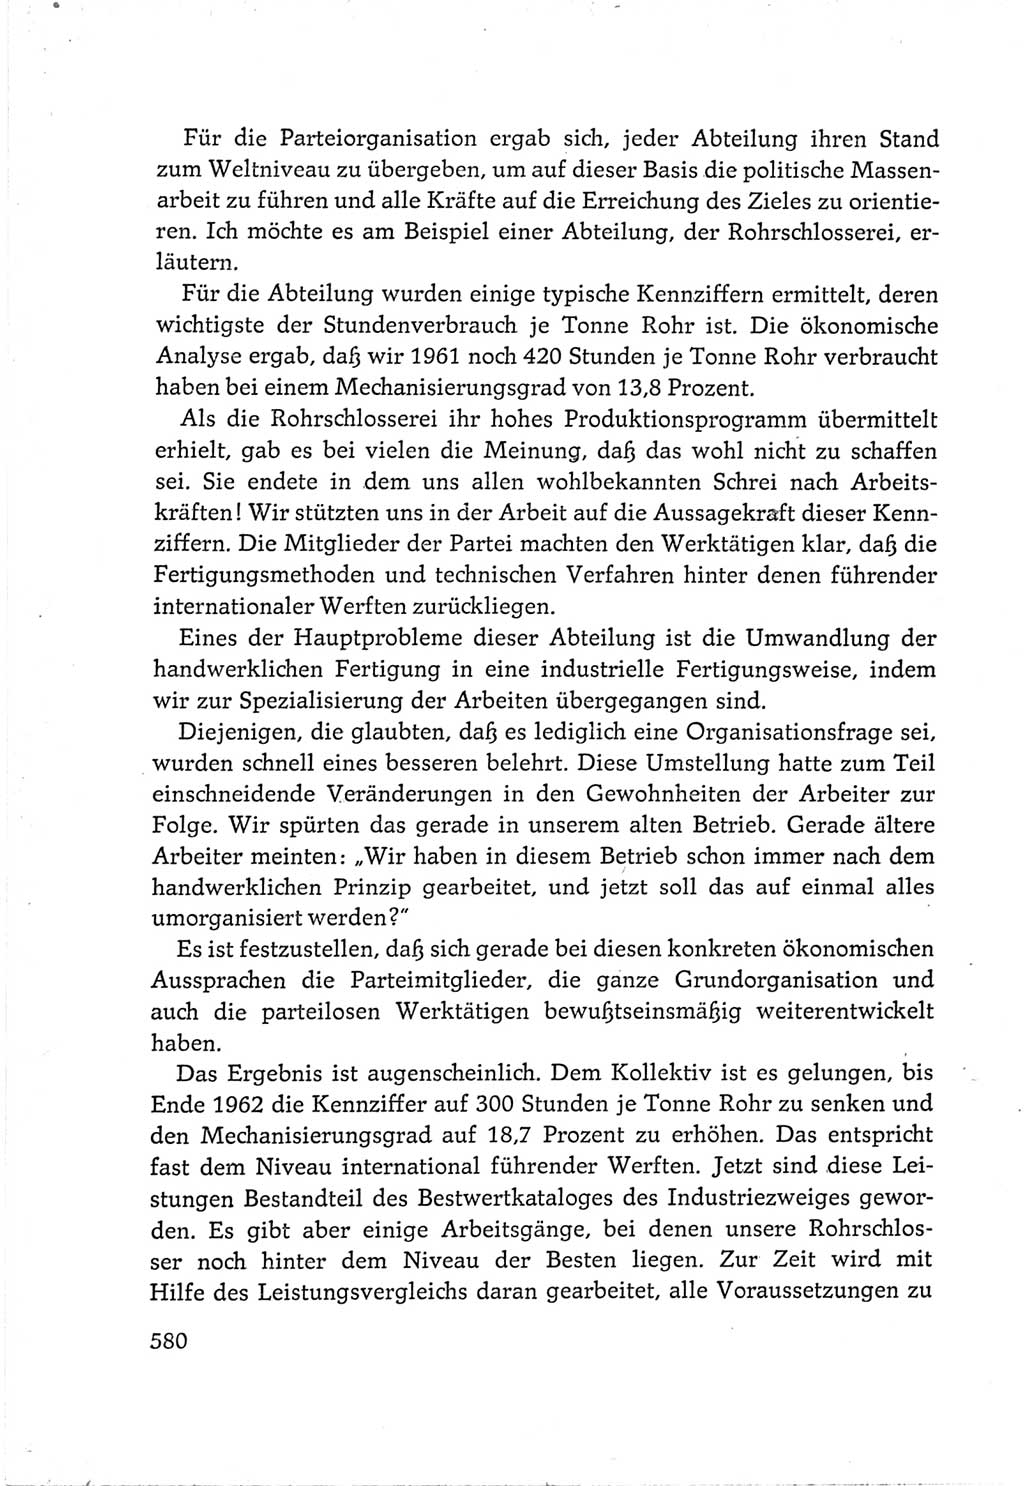 Protokoll der Verhandlungen des Ⅵ. Parteitages der Sozialistischen Einheitspartei Deutschlands (SED) [Deutsche Demokratische Republik (DDR)] 1963, Band Ⅲ, Seite 580 (Prot. Verh. Ⅵ. PT SED DDR 1963, Bd. Ⅲ, S. 580)